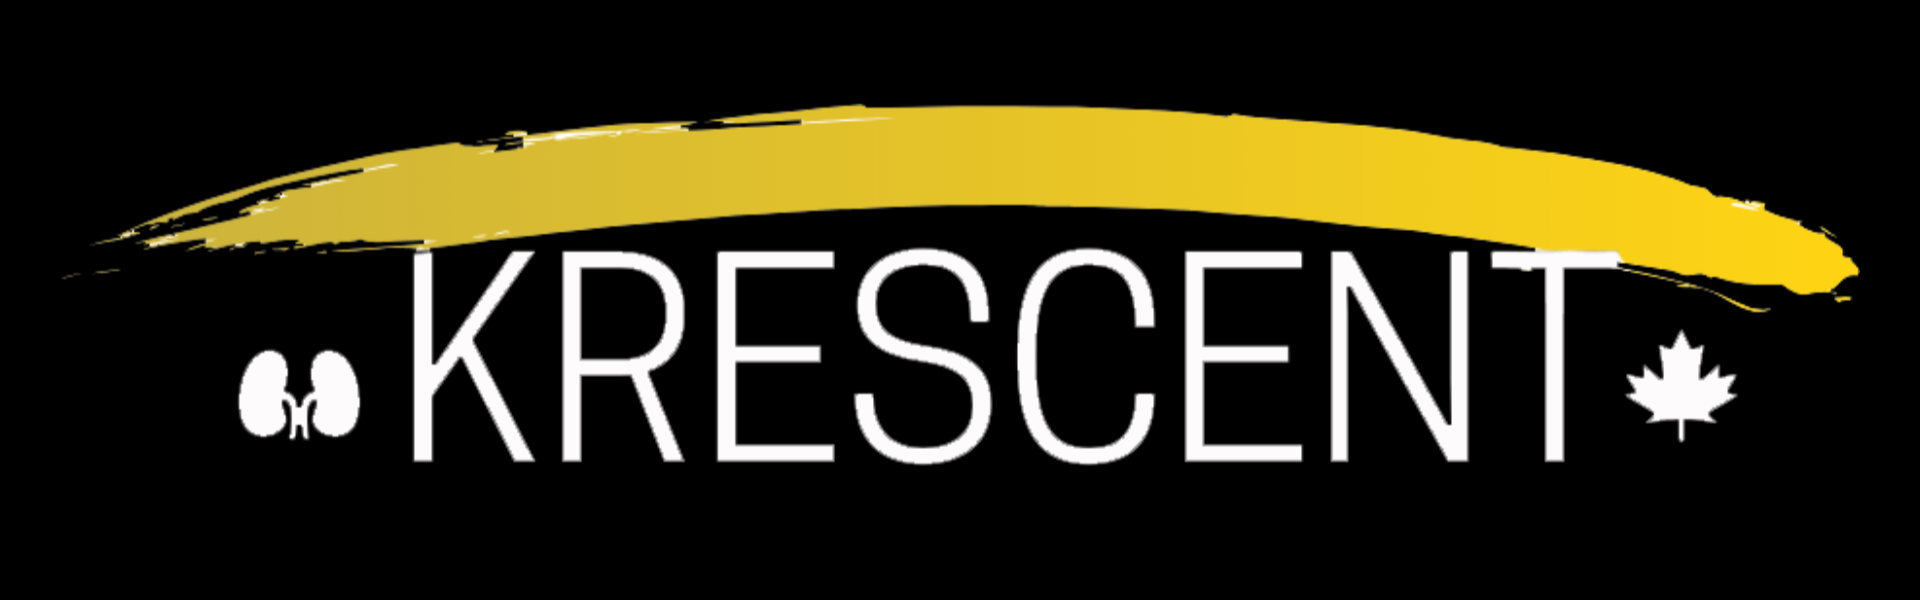 krescent logo